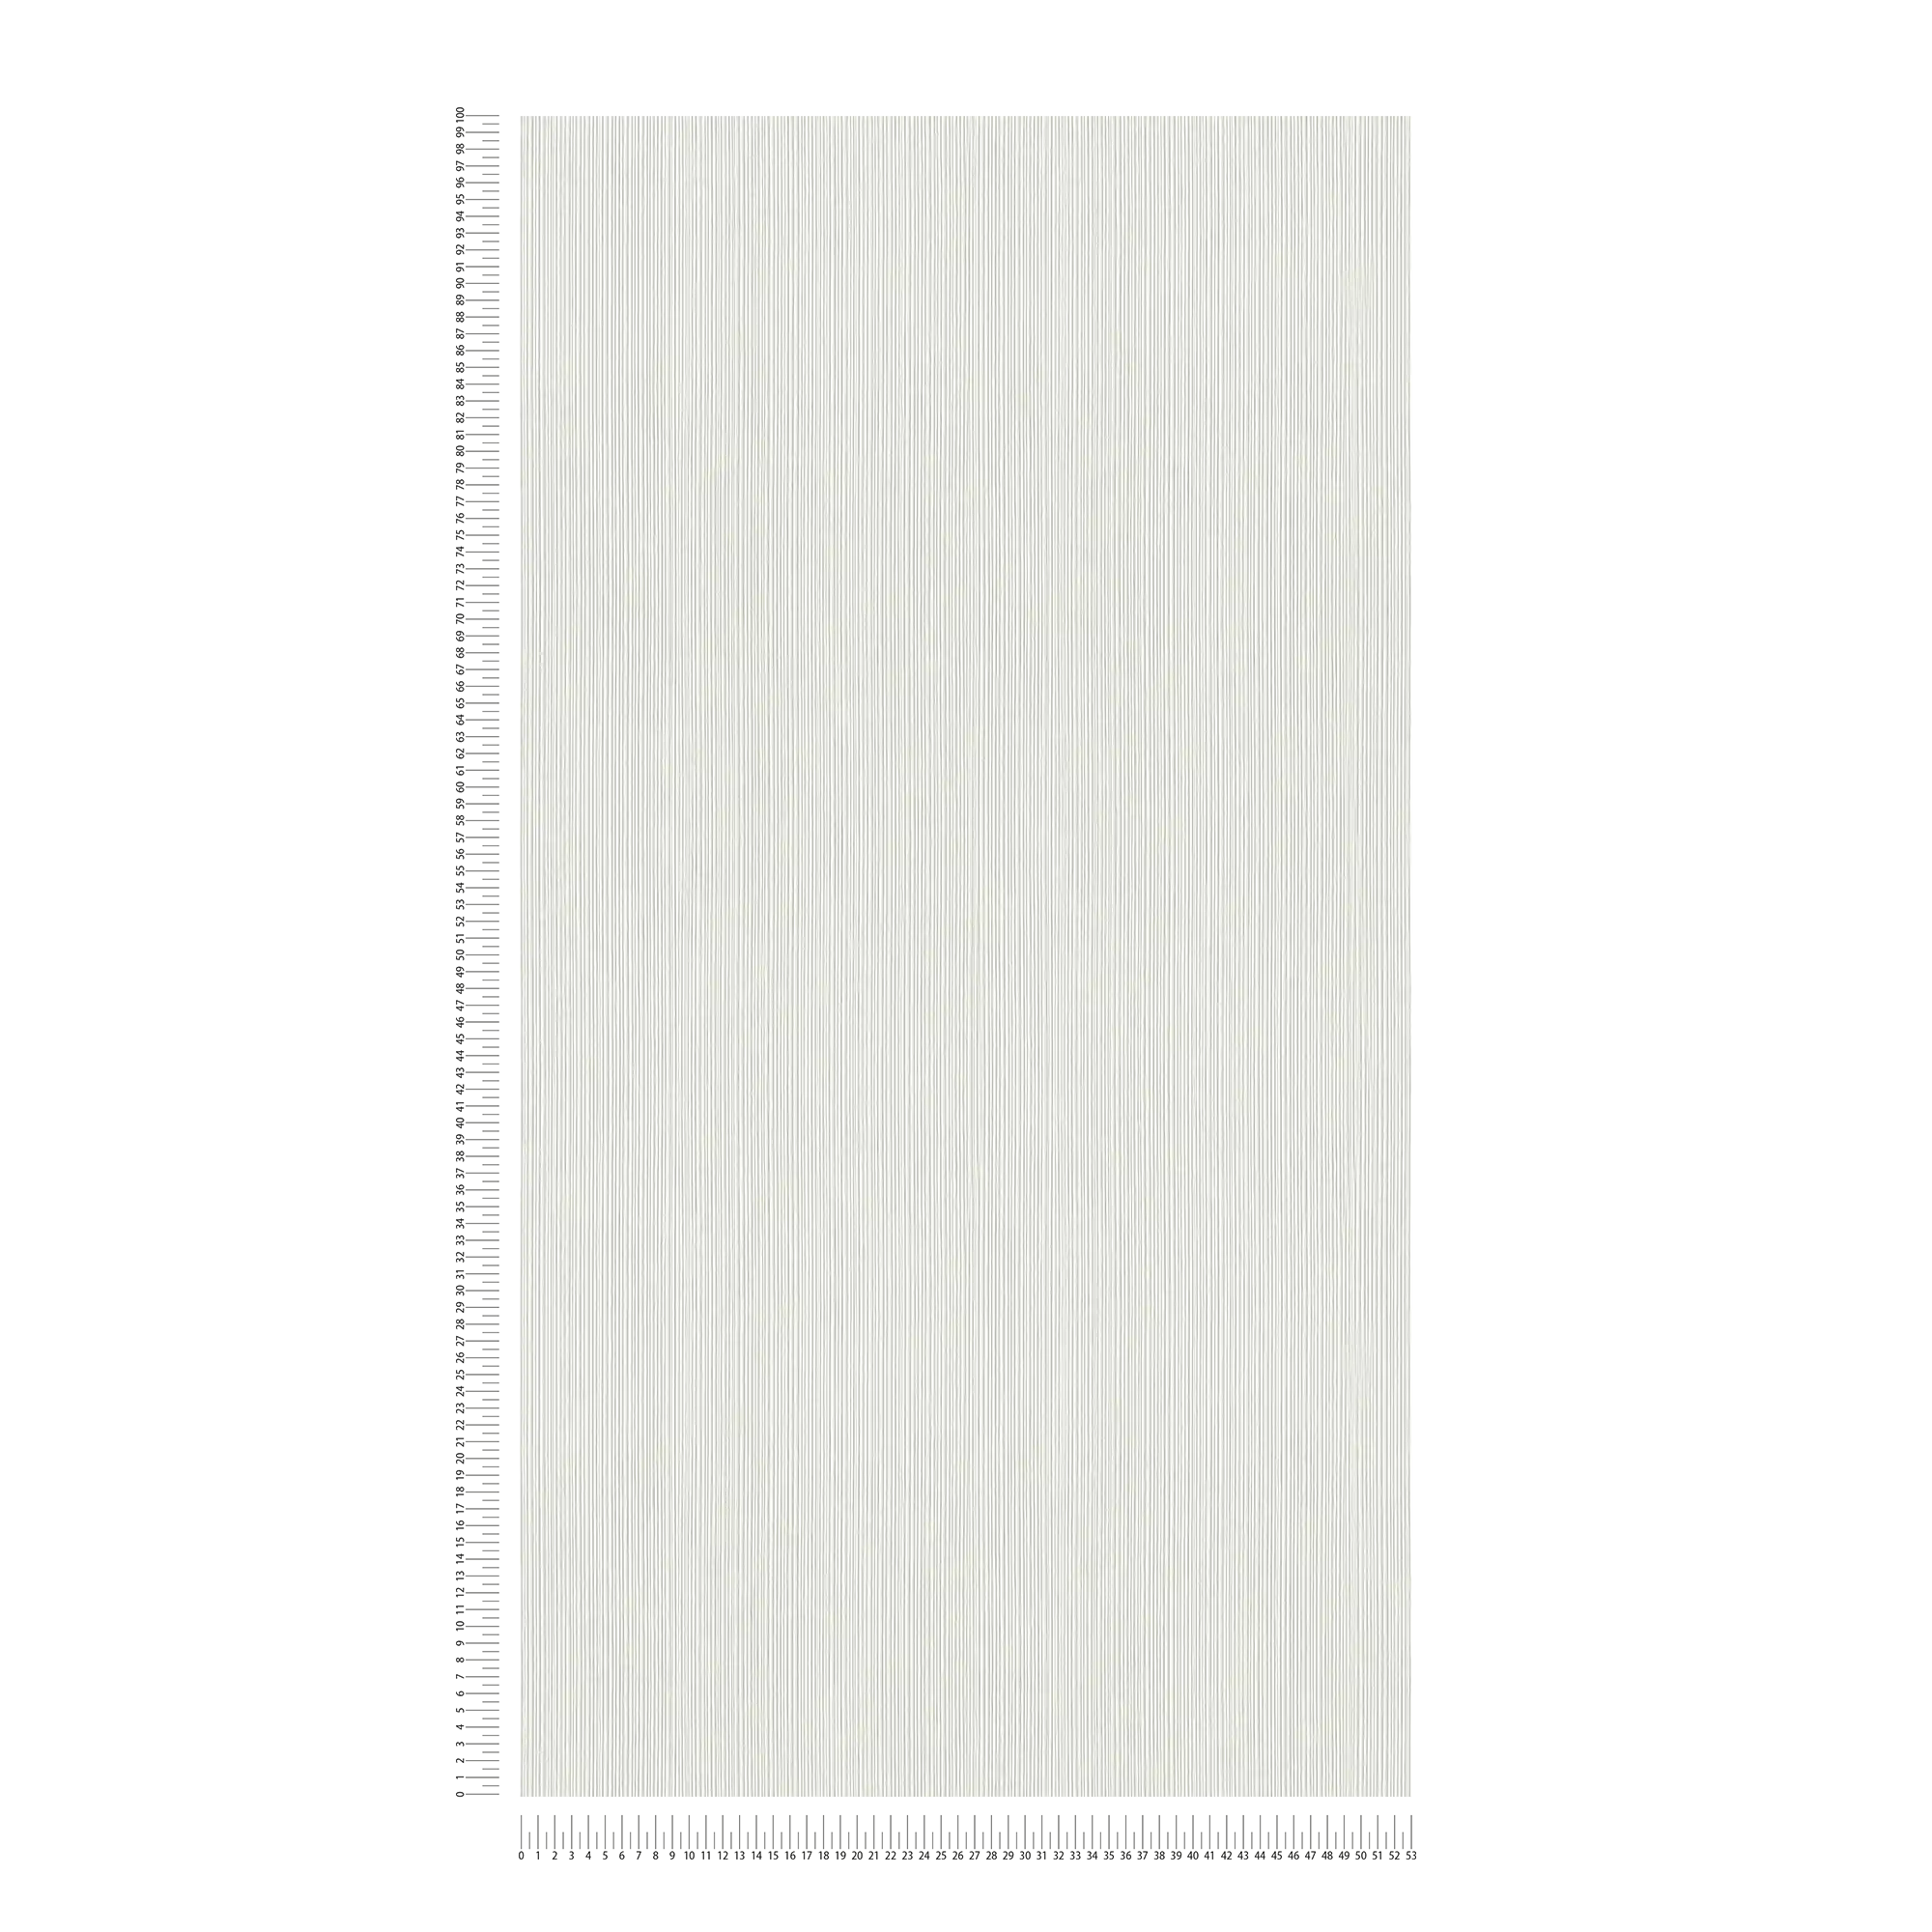             Weiße Tapete mit liniertem Strukturmuster
        